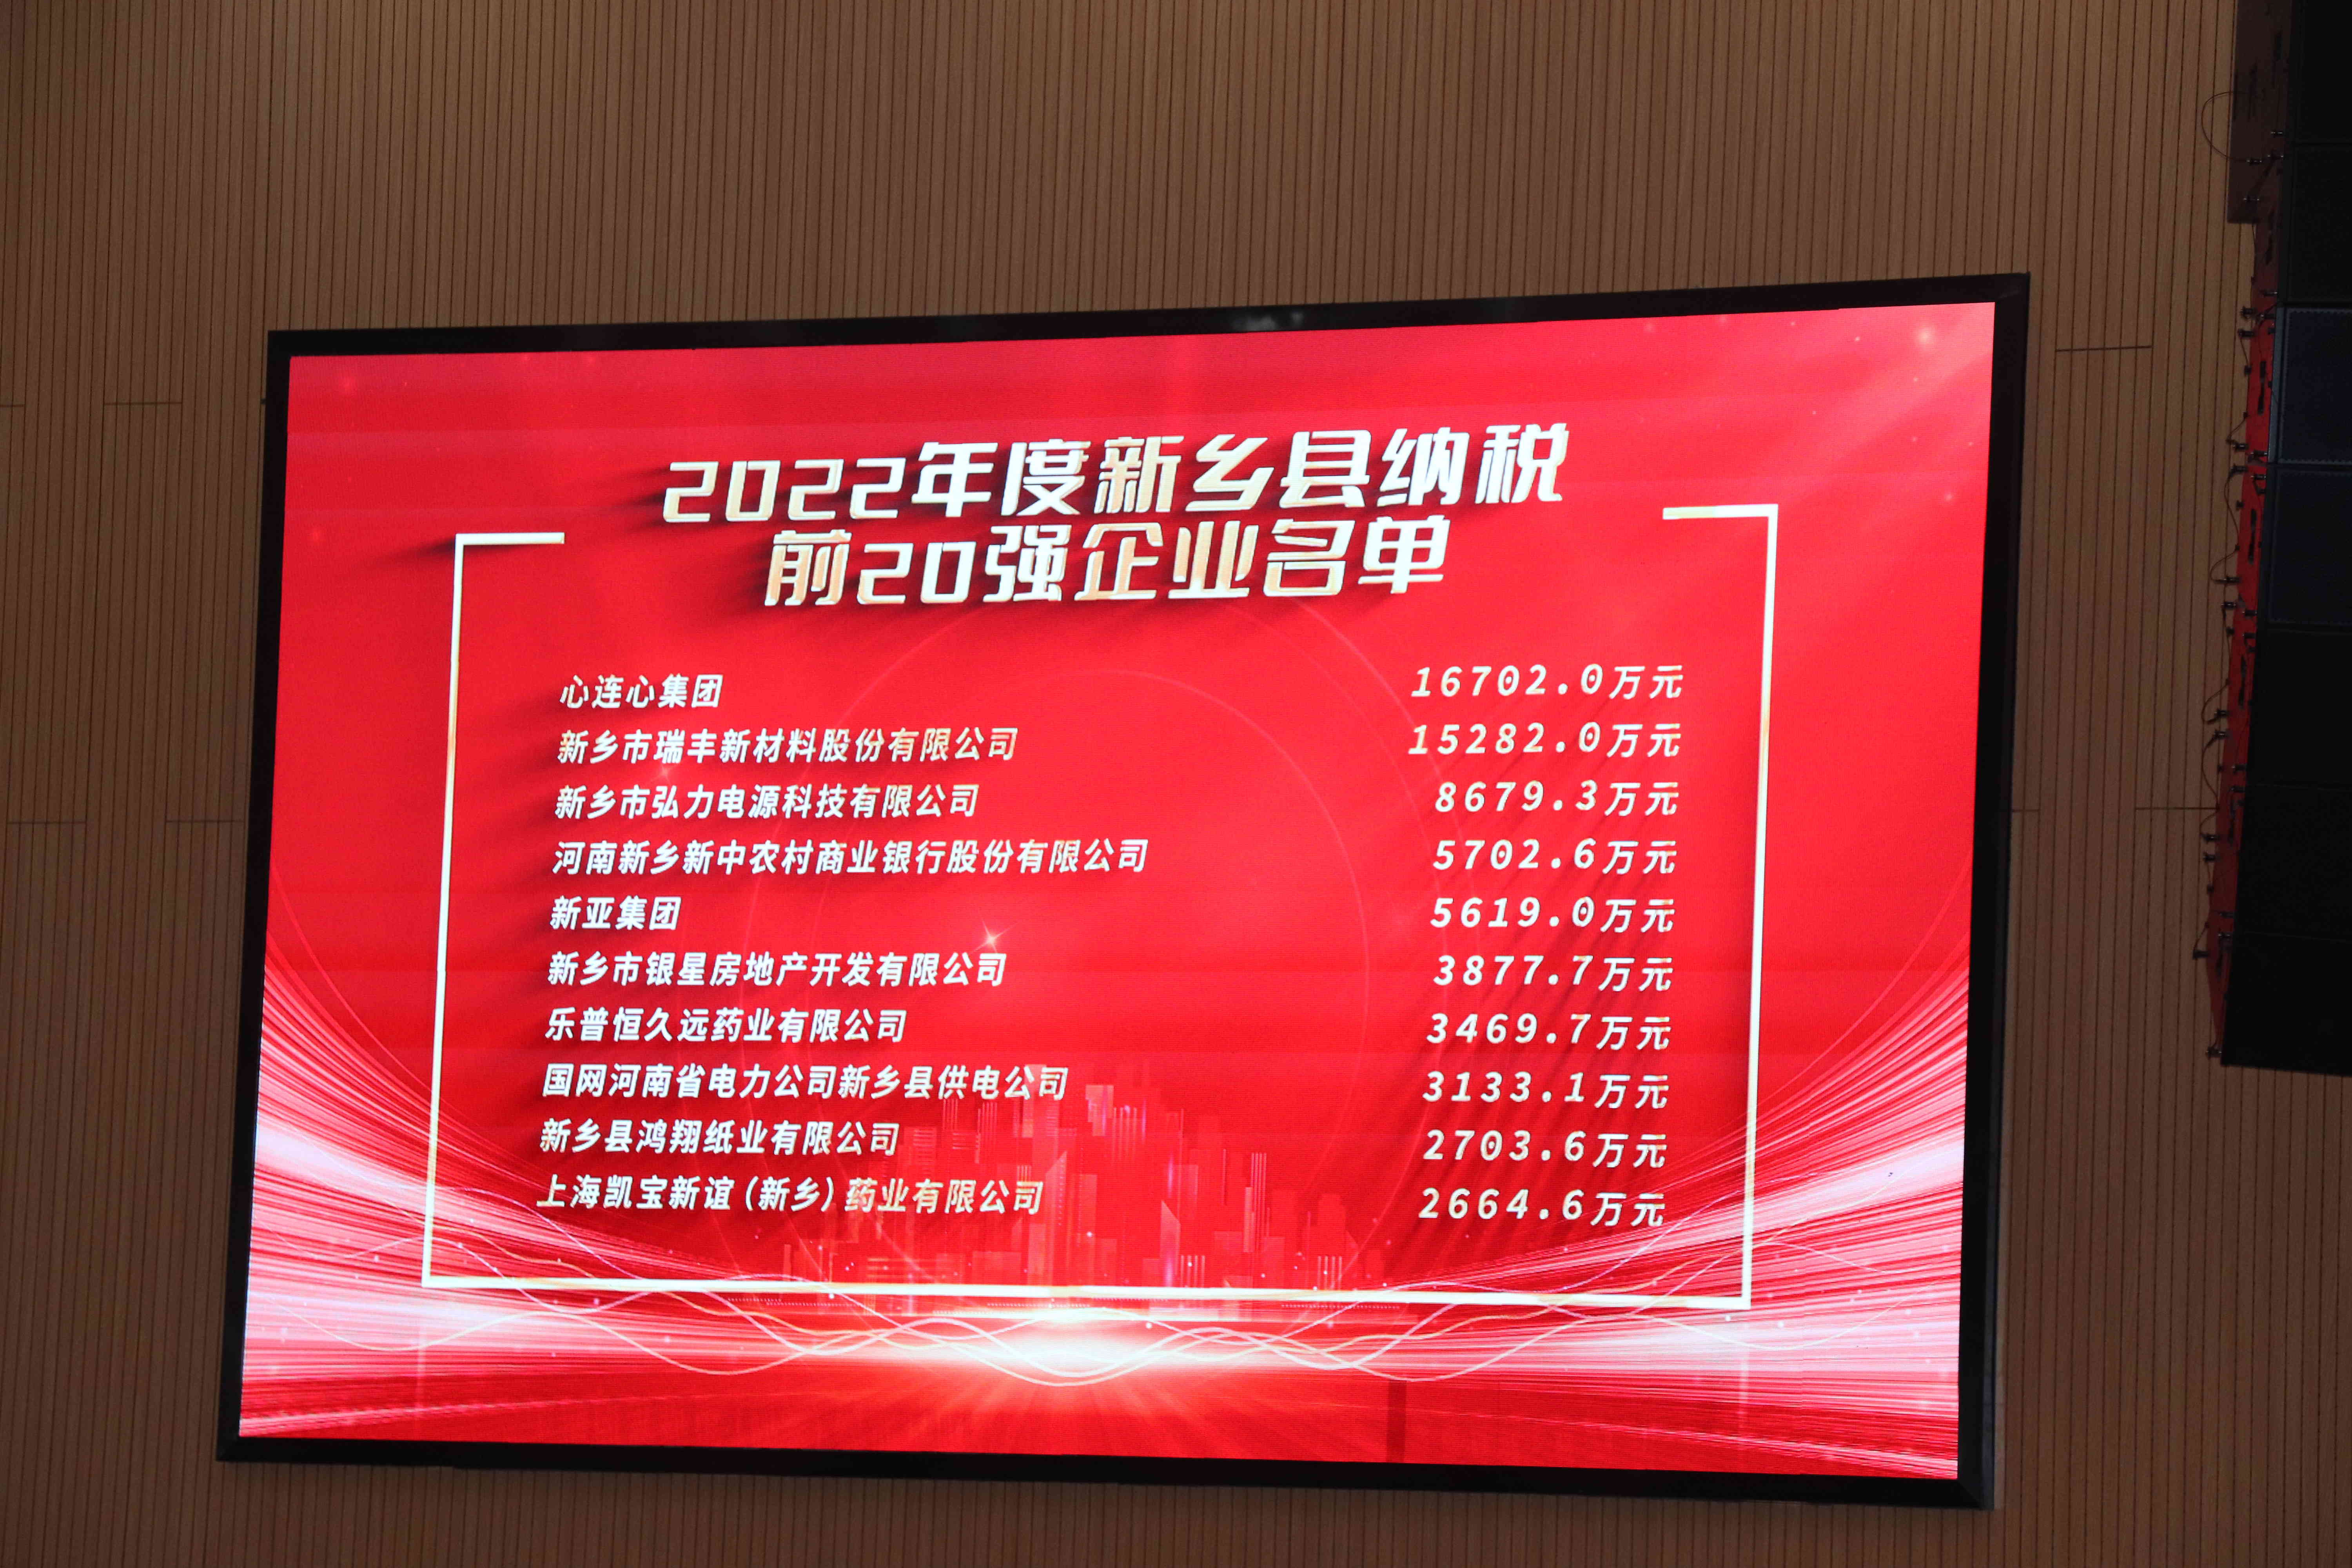 2022年新鄉(xiāng)縣納稅企業(yè)名單